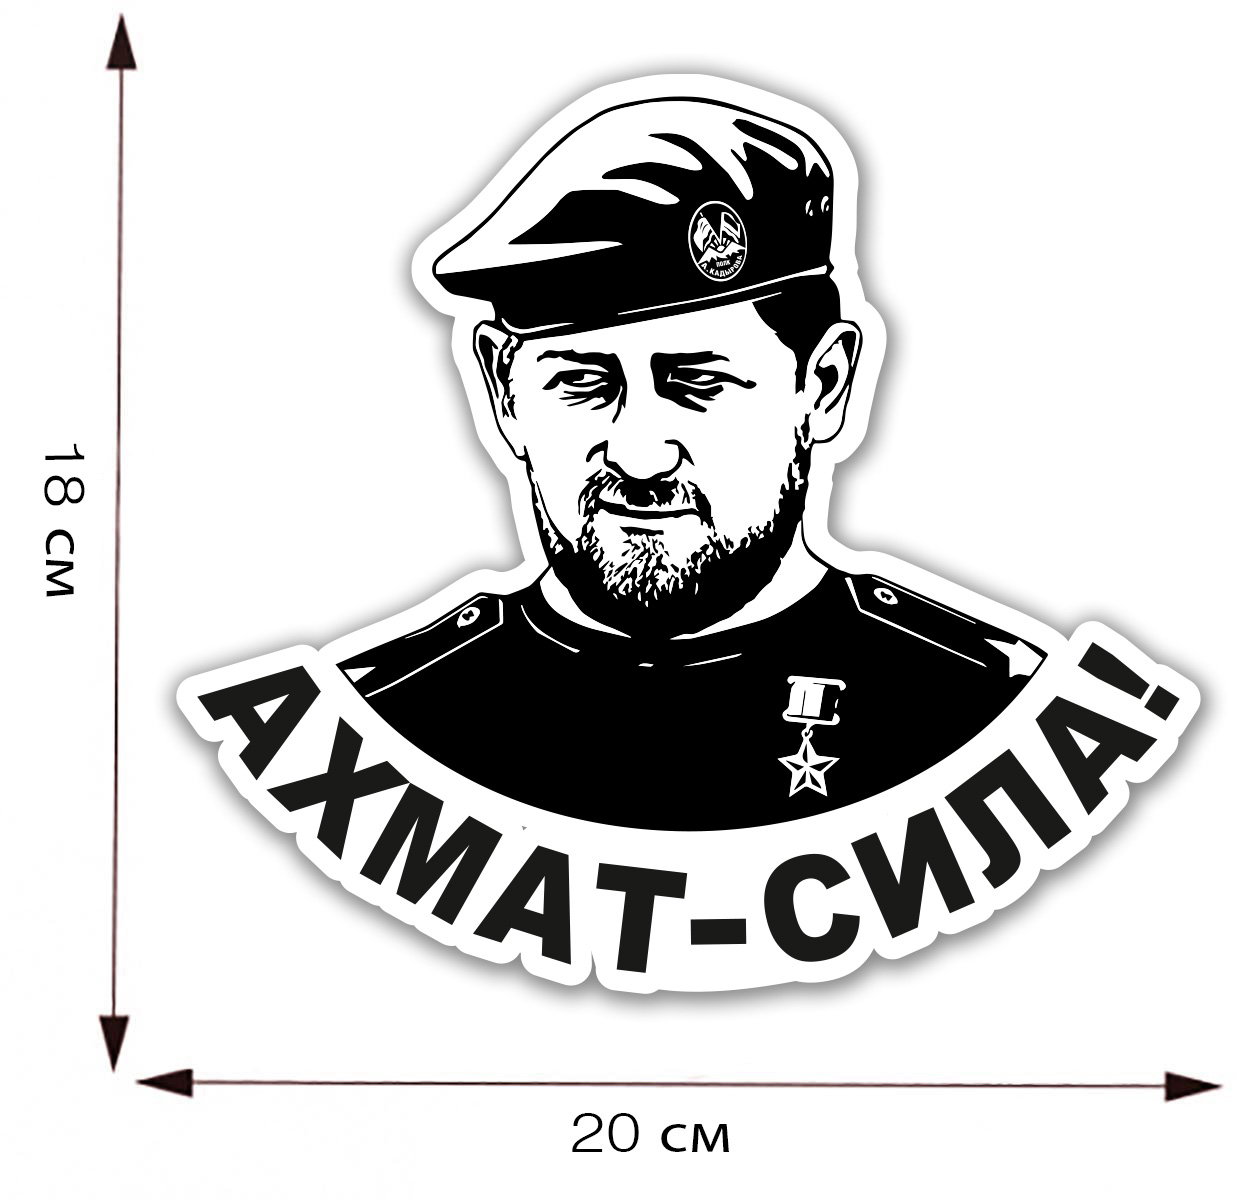 Наклейка на авто "Ахмат - Сила!" с портретом Рамзана Кадырова - размер